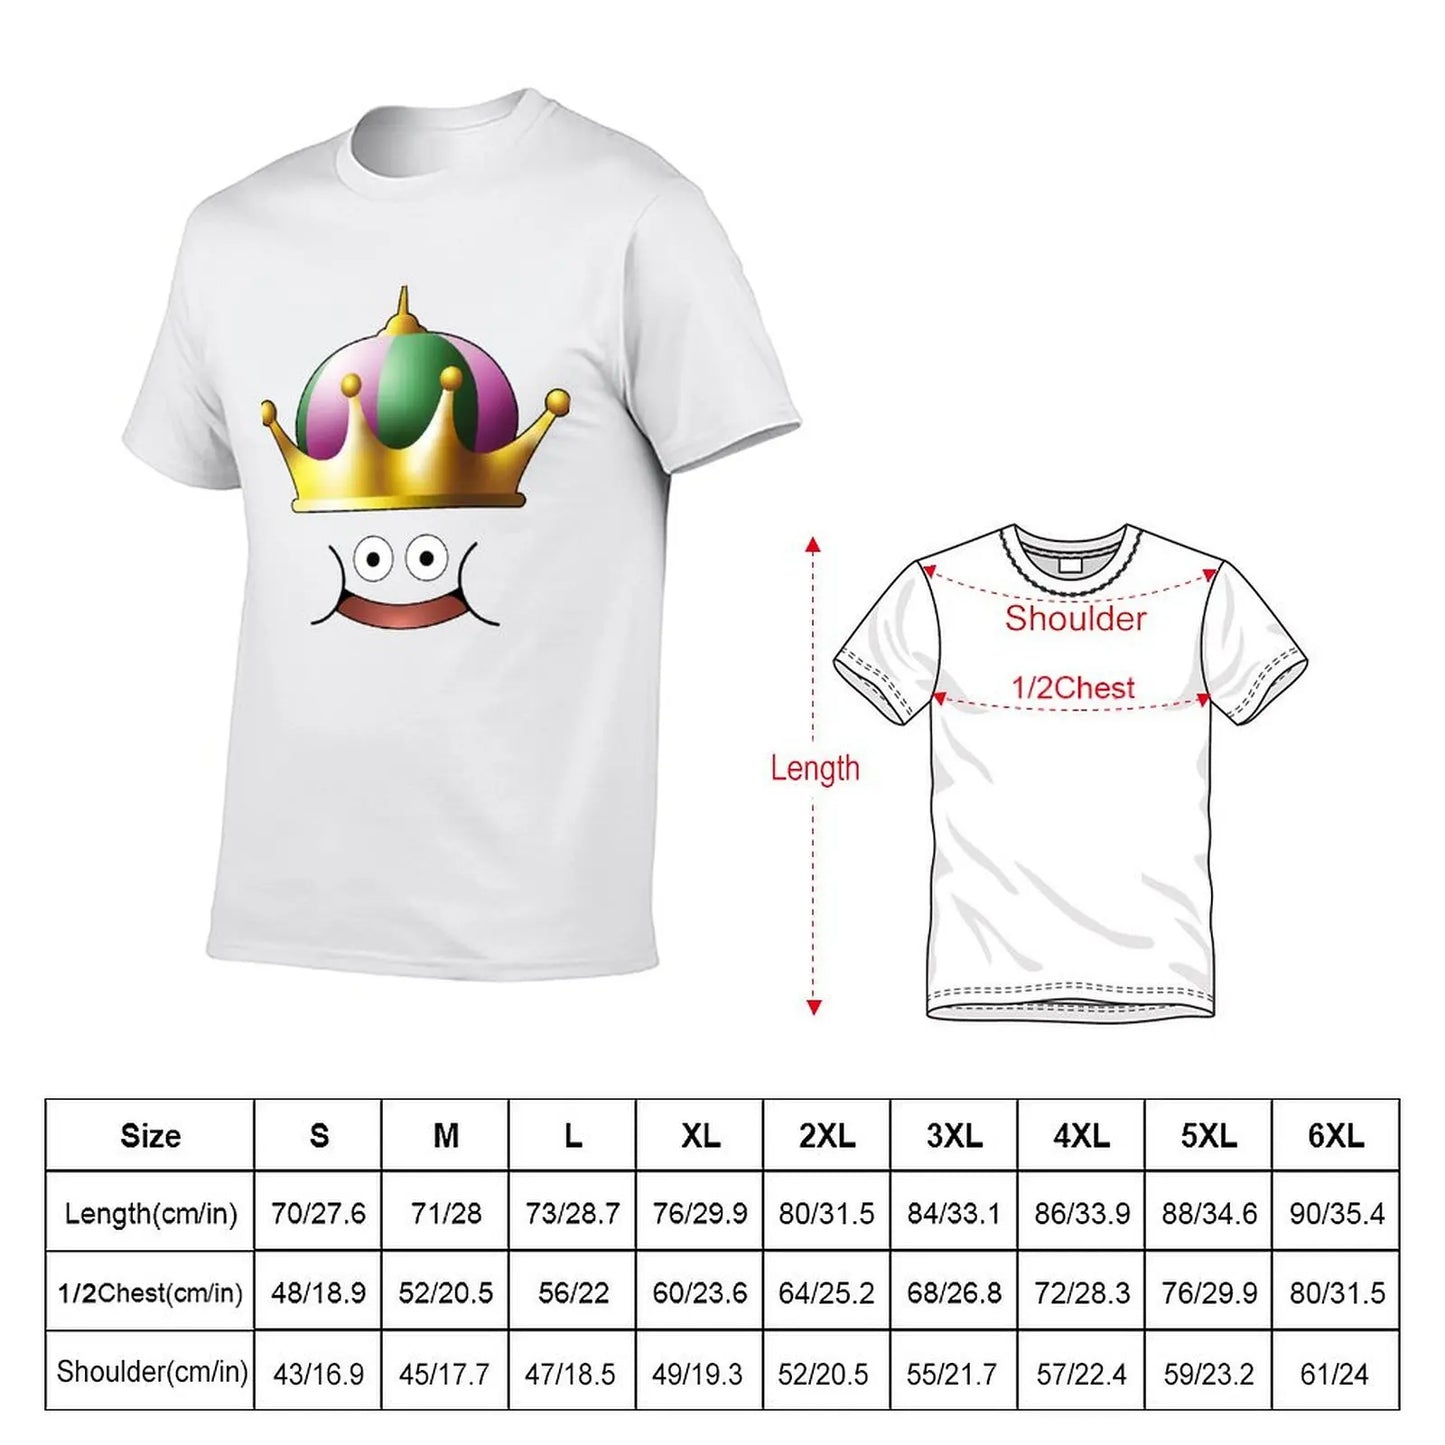 King Slime Face Dragon Quest essentiel pour T-shirt de qualité supérieure T-shirt Harajuku Sport Humor graphique Fitness taille américaine